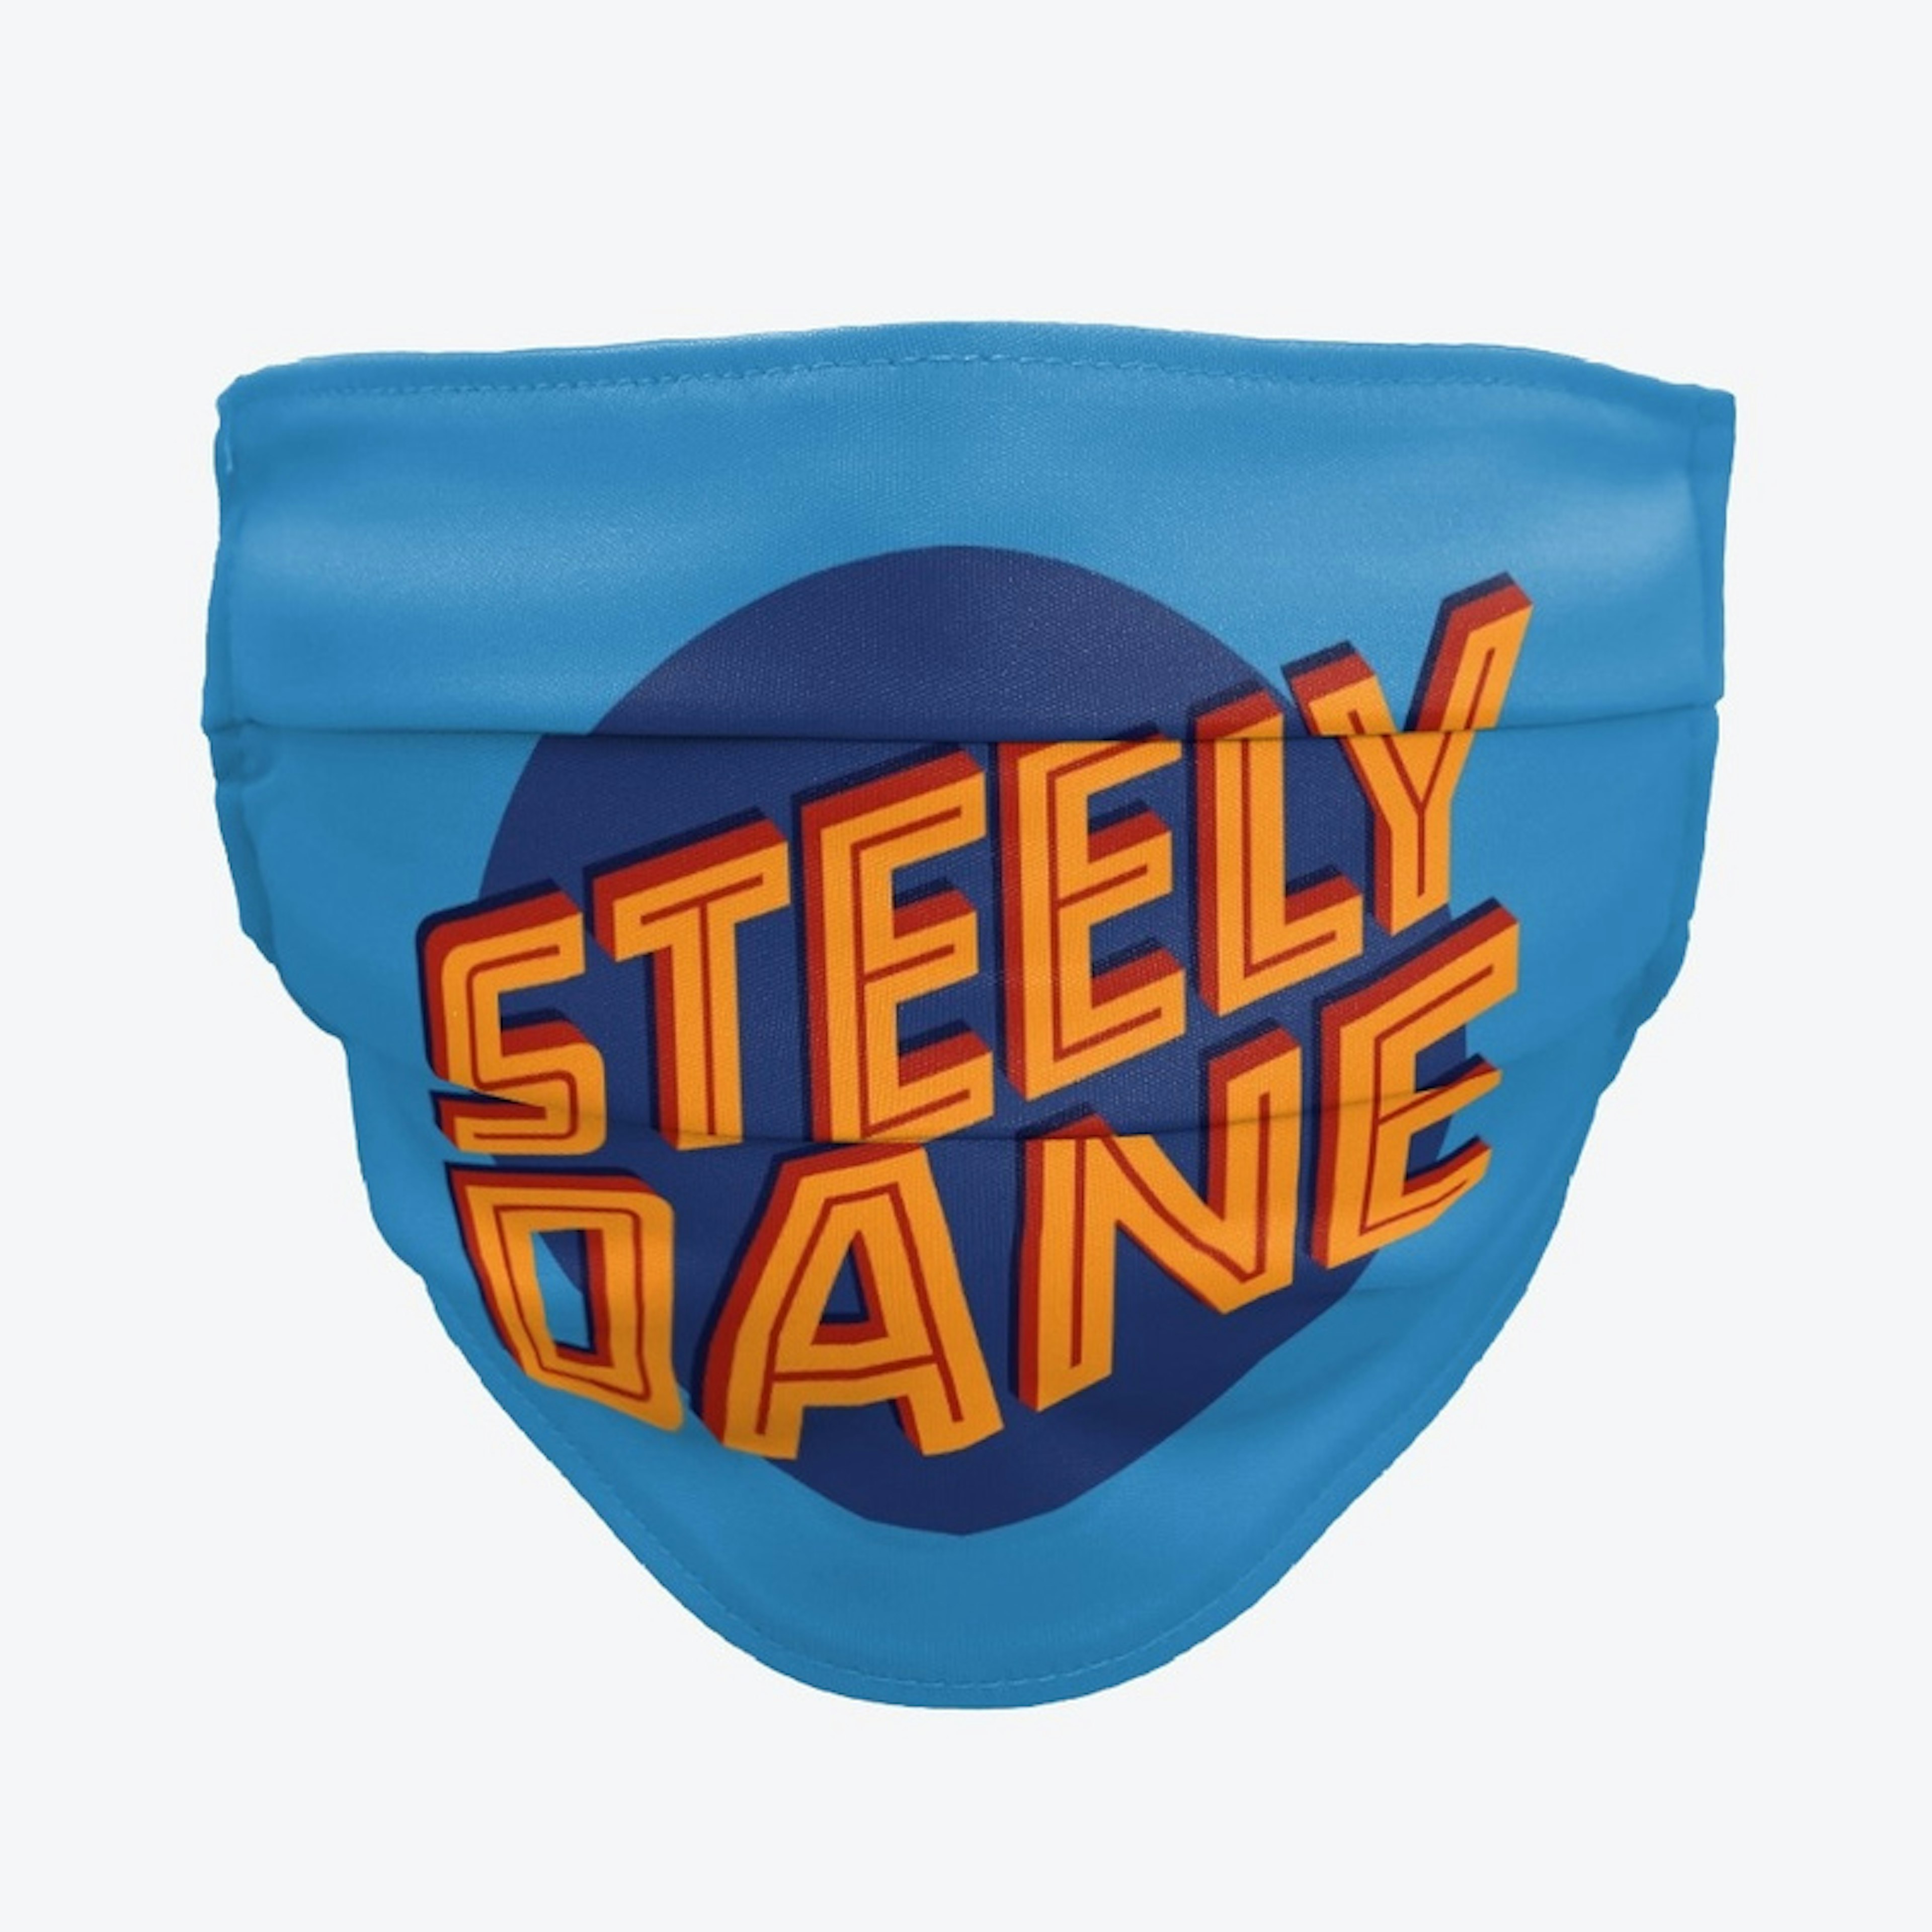 Steely Dane Mask